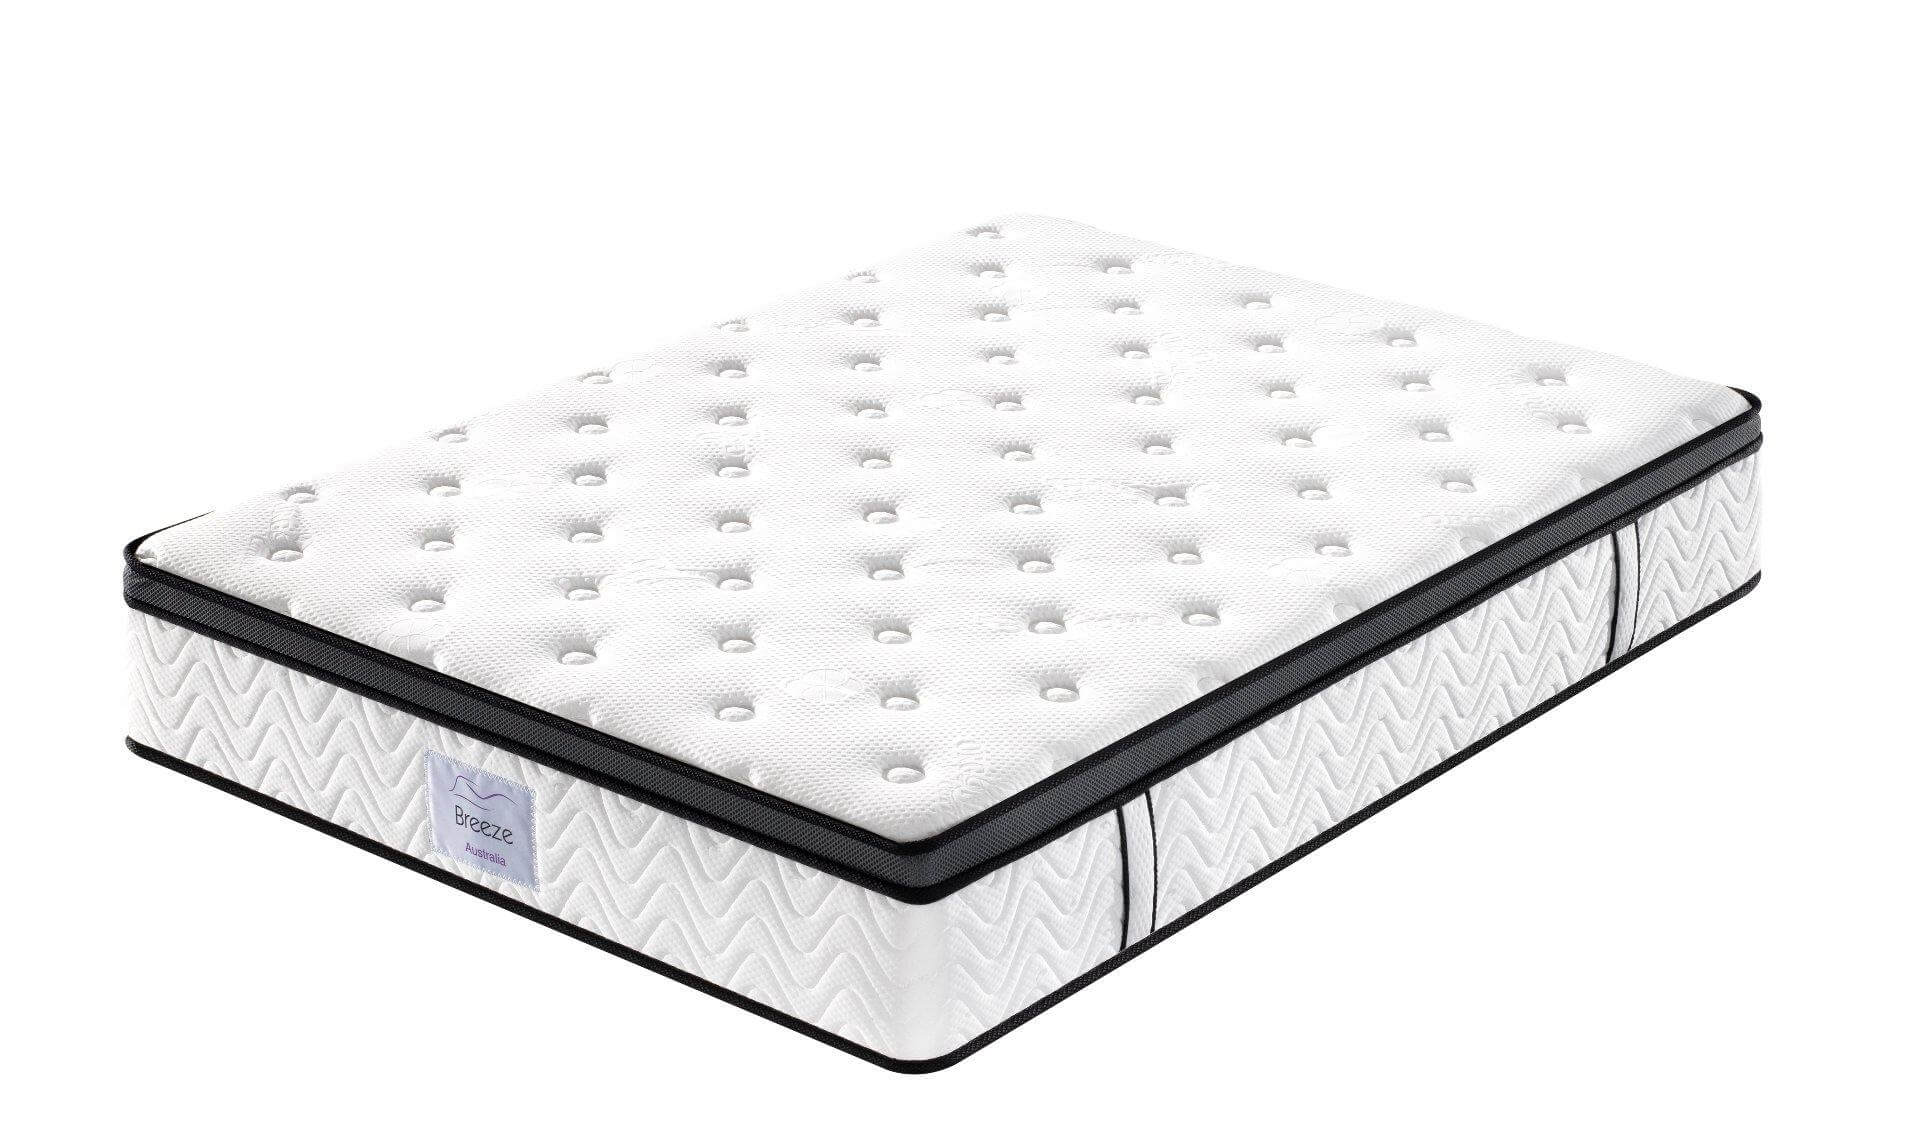 king coil beaumont euro top queen mattress